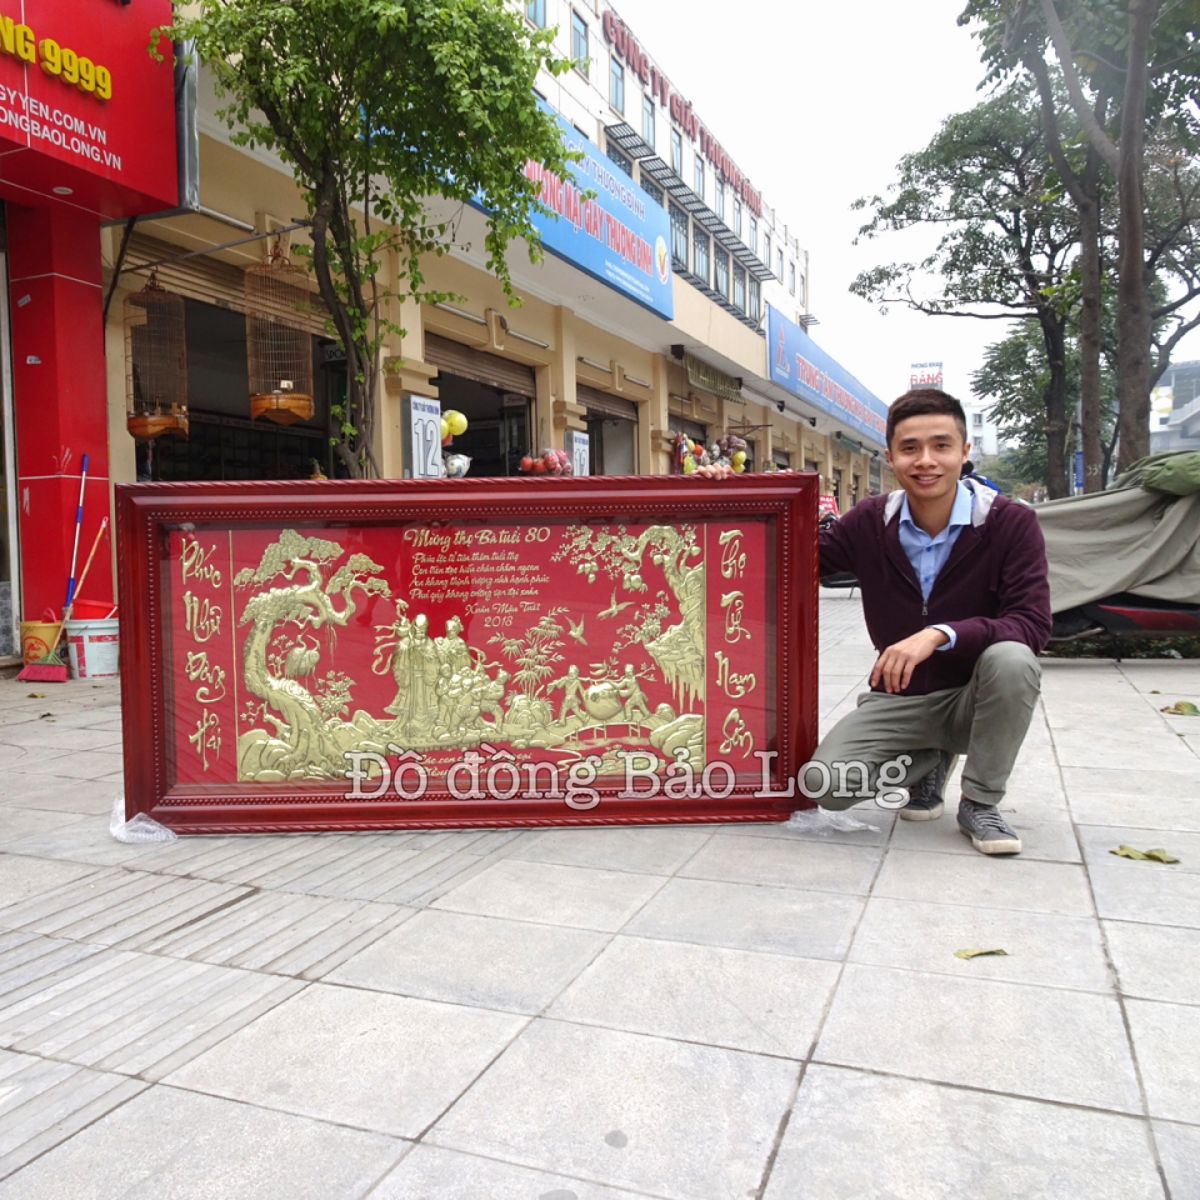 Cửa hàng đồ đồng, tranh đồng, đồ thở cúng tại Nghệ An